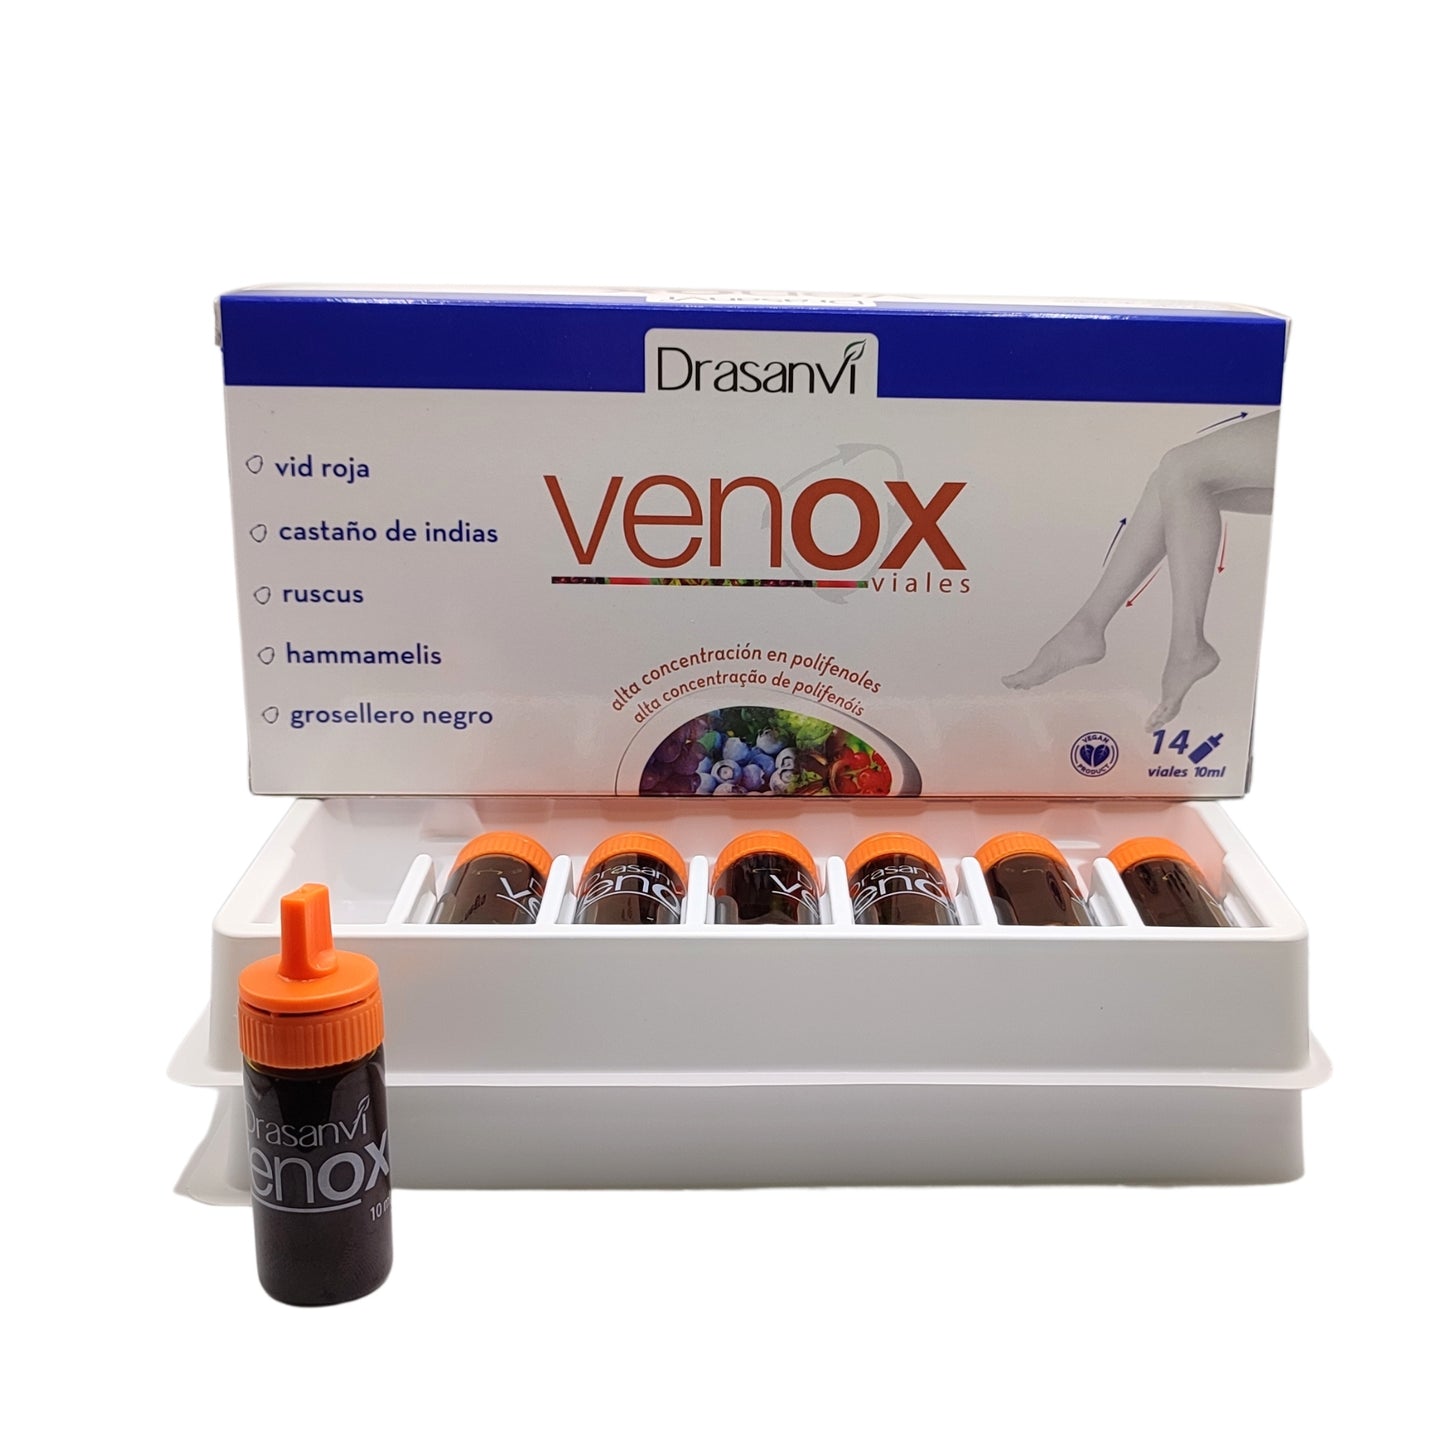 Venox Circulació - Drasanvi - 14 vials